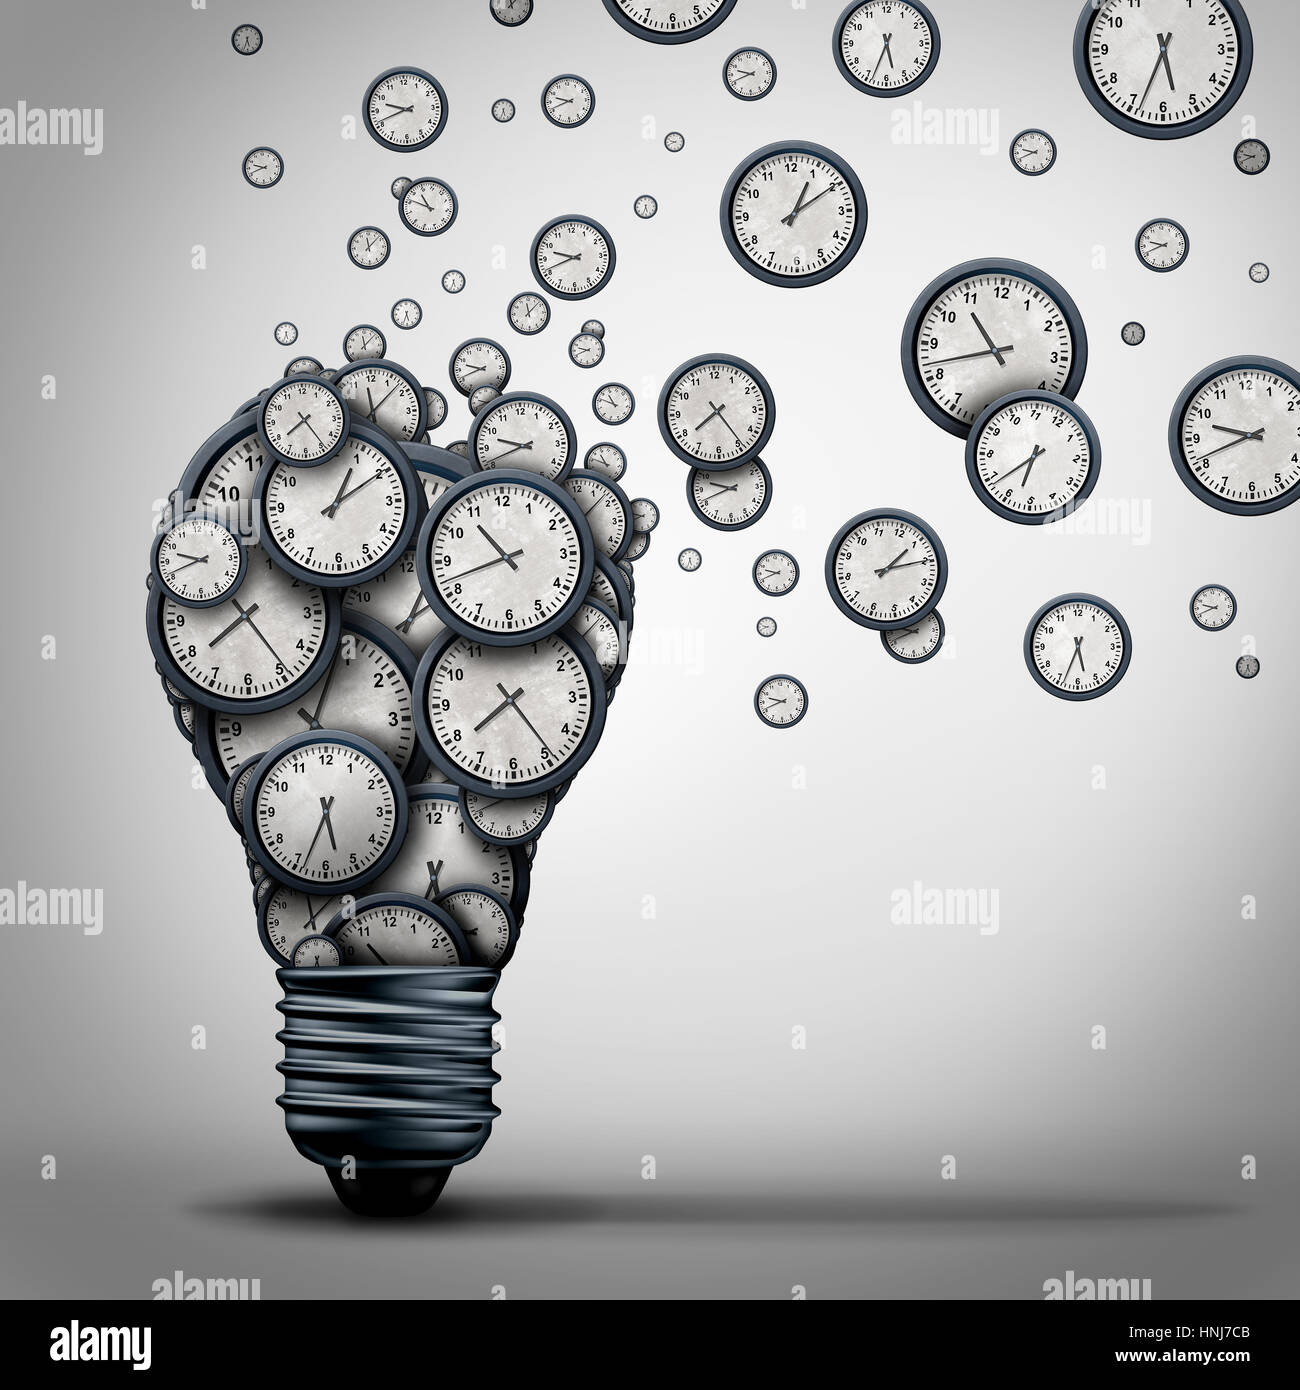 Temps idée marketing business formation concept comme un groupe d'objets de l'horloge en forme d'une ampoule électrique qui se propage. Banque D'Images